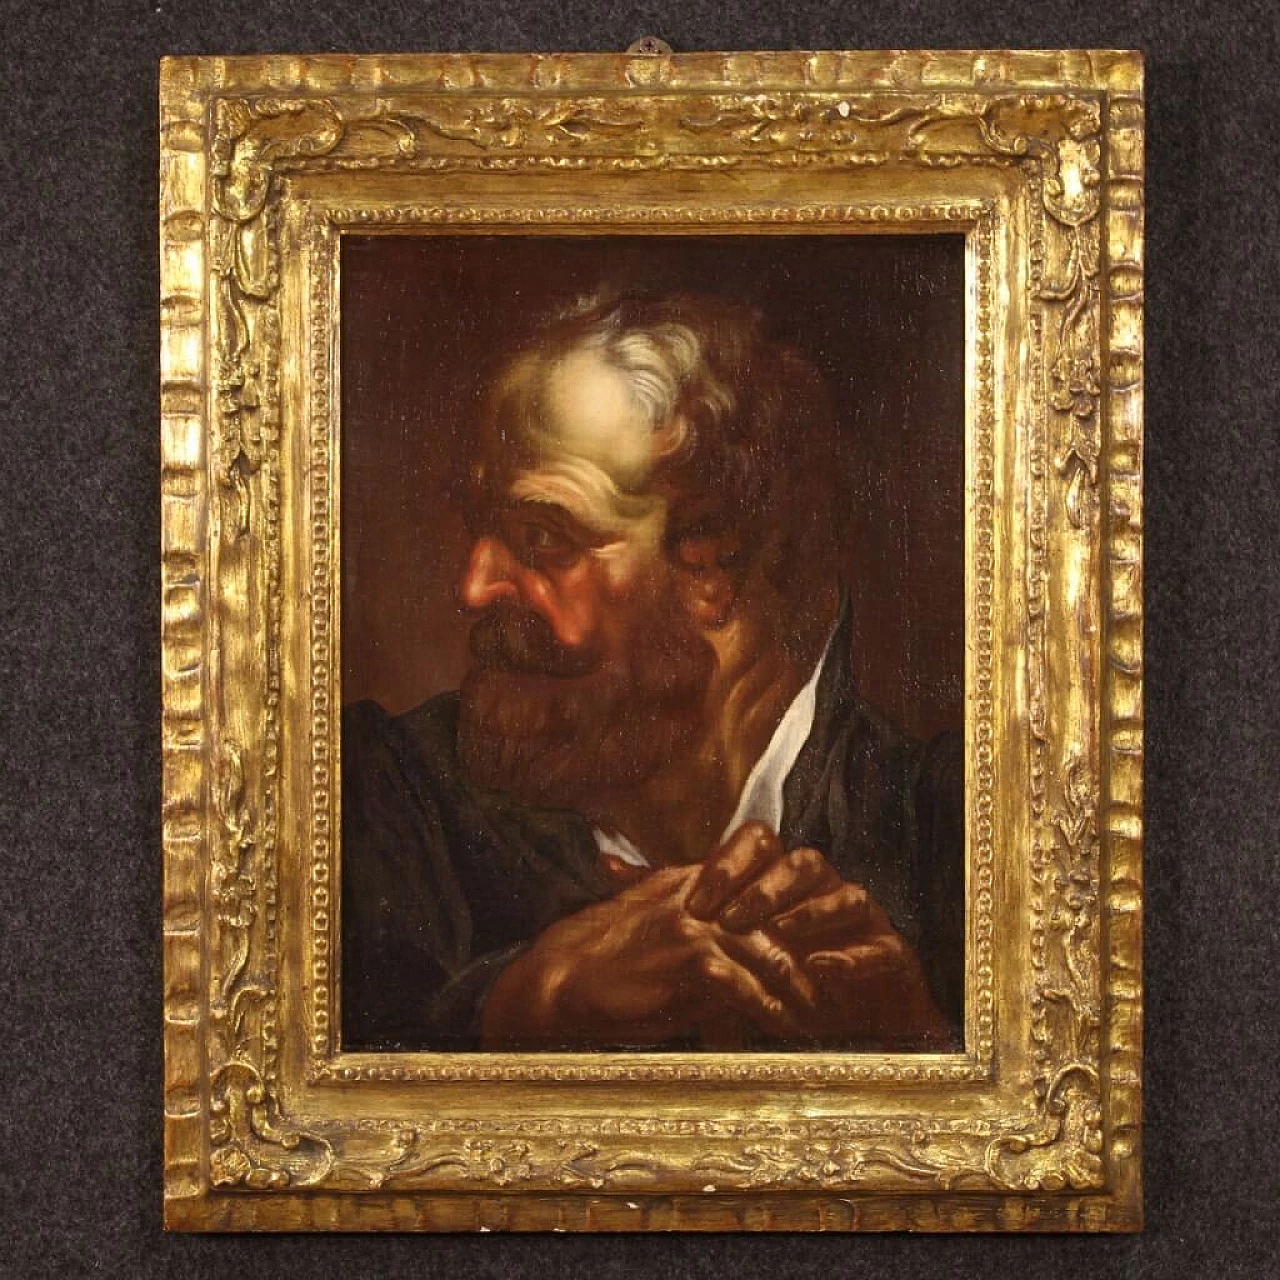 Stile di Egidio Dall'Oglio, Ritratto maschile, olio su tela, prima metà del '700 1352029